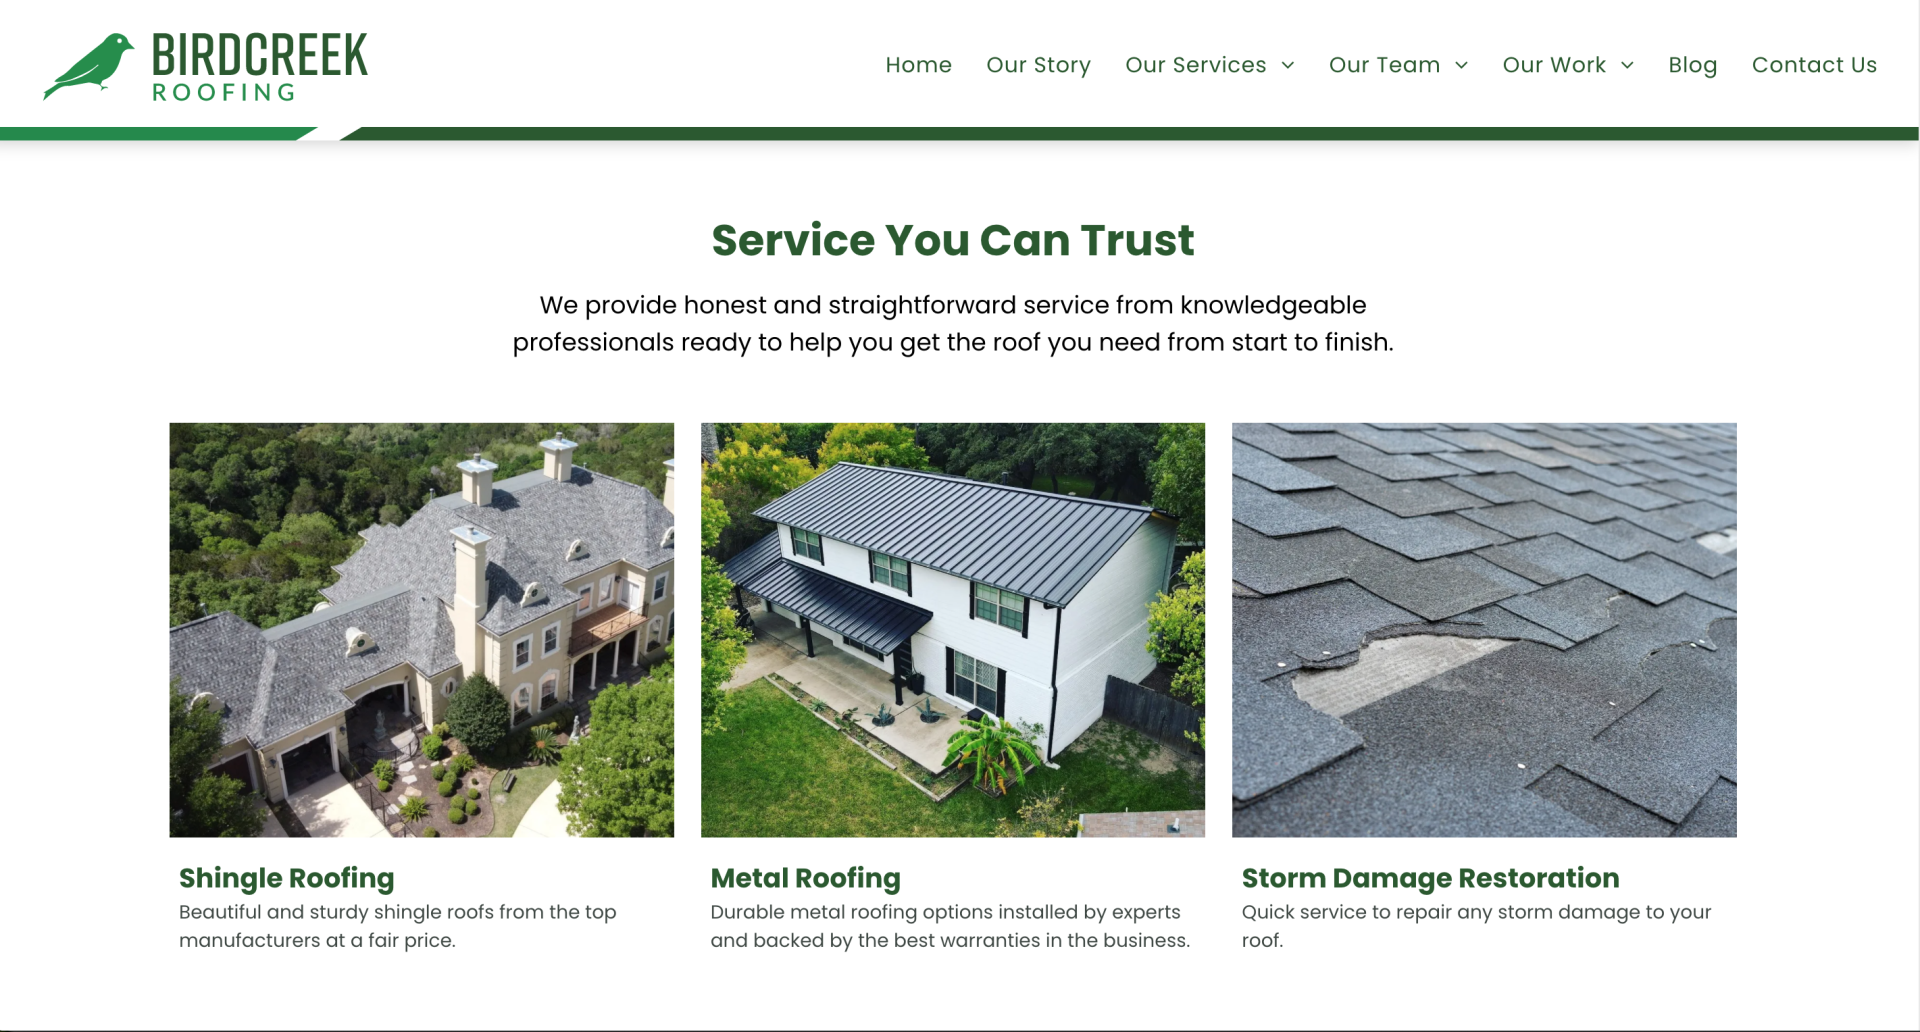 birdcreek roofing website design - services